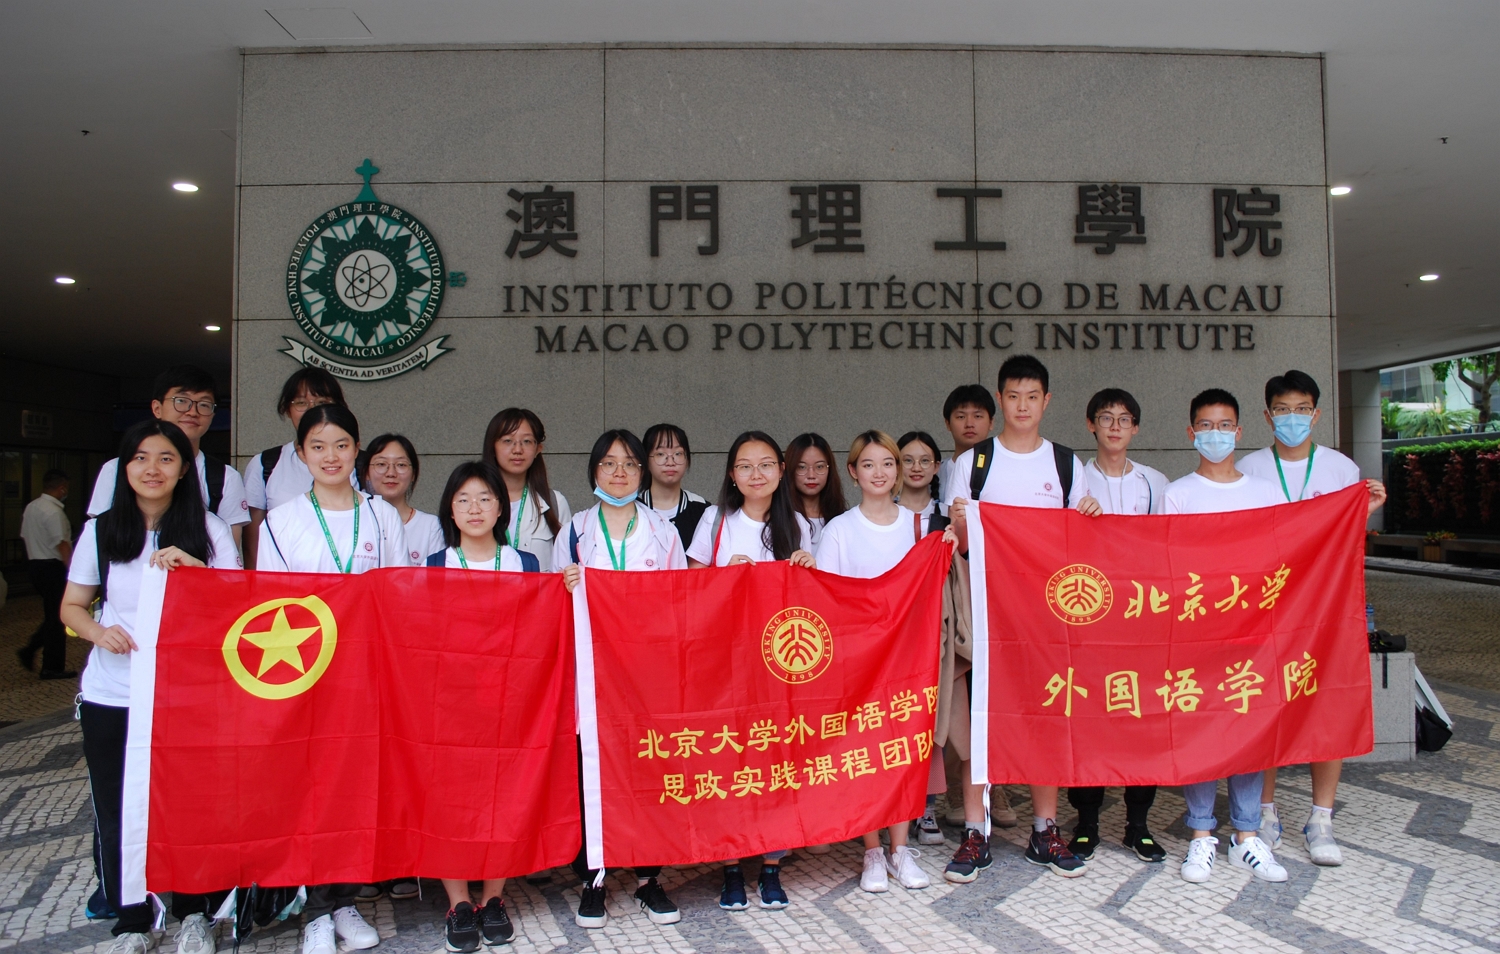 Universidade Politécnica de Macau - Conhecimento, Experiência,  Universalidade!